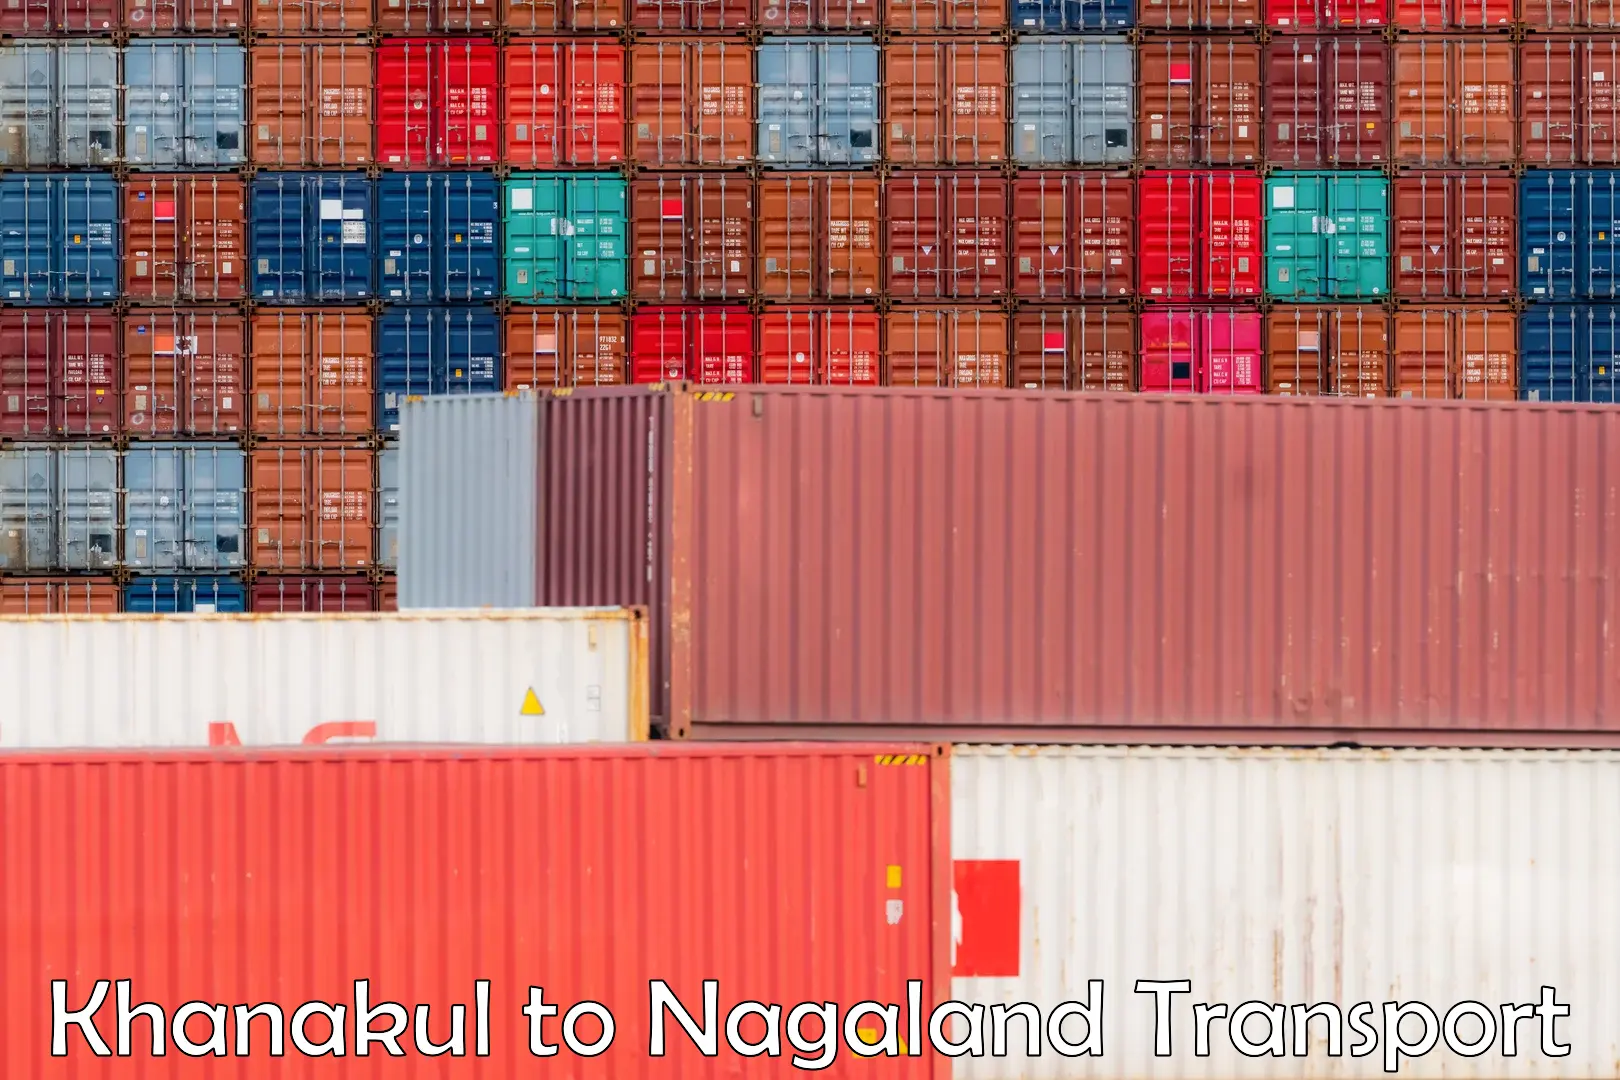 Shipping partner Khanakul to NIT Nagaland